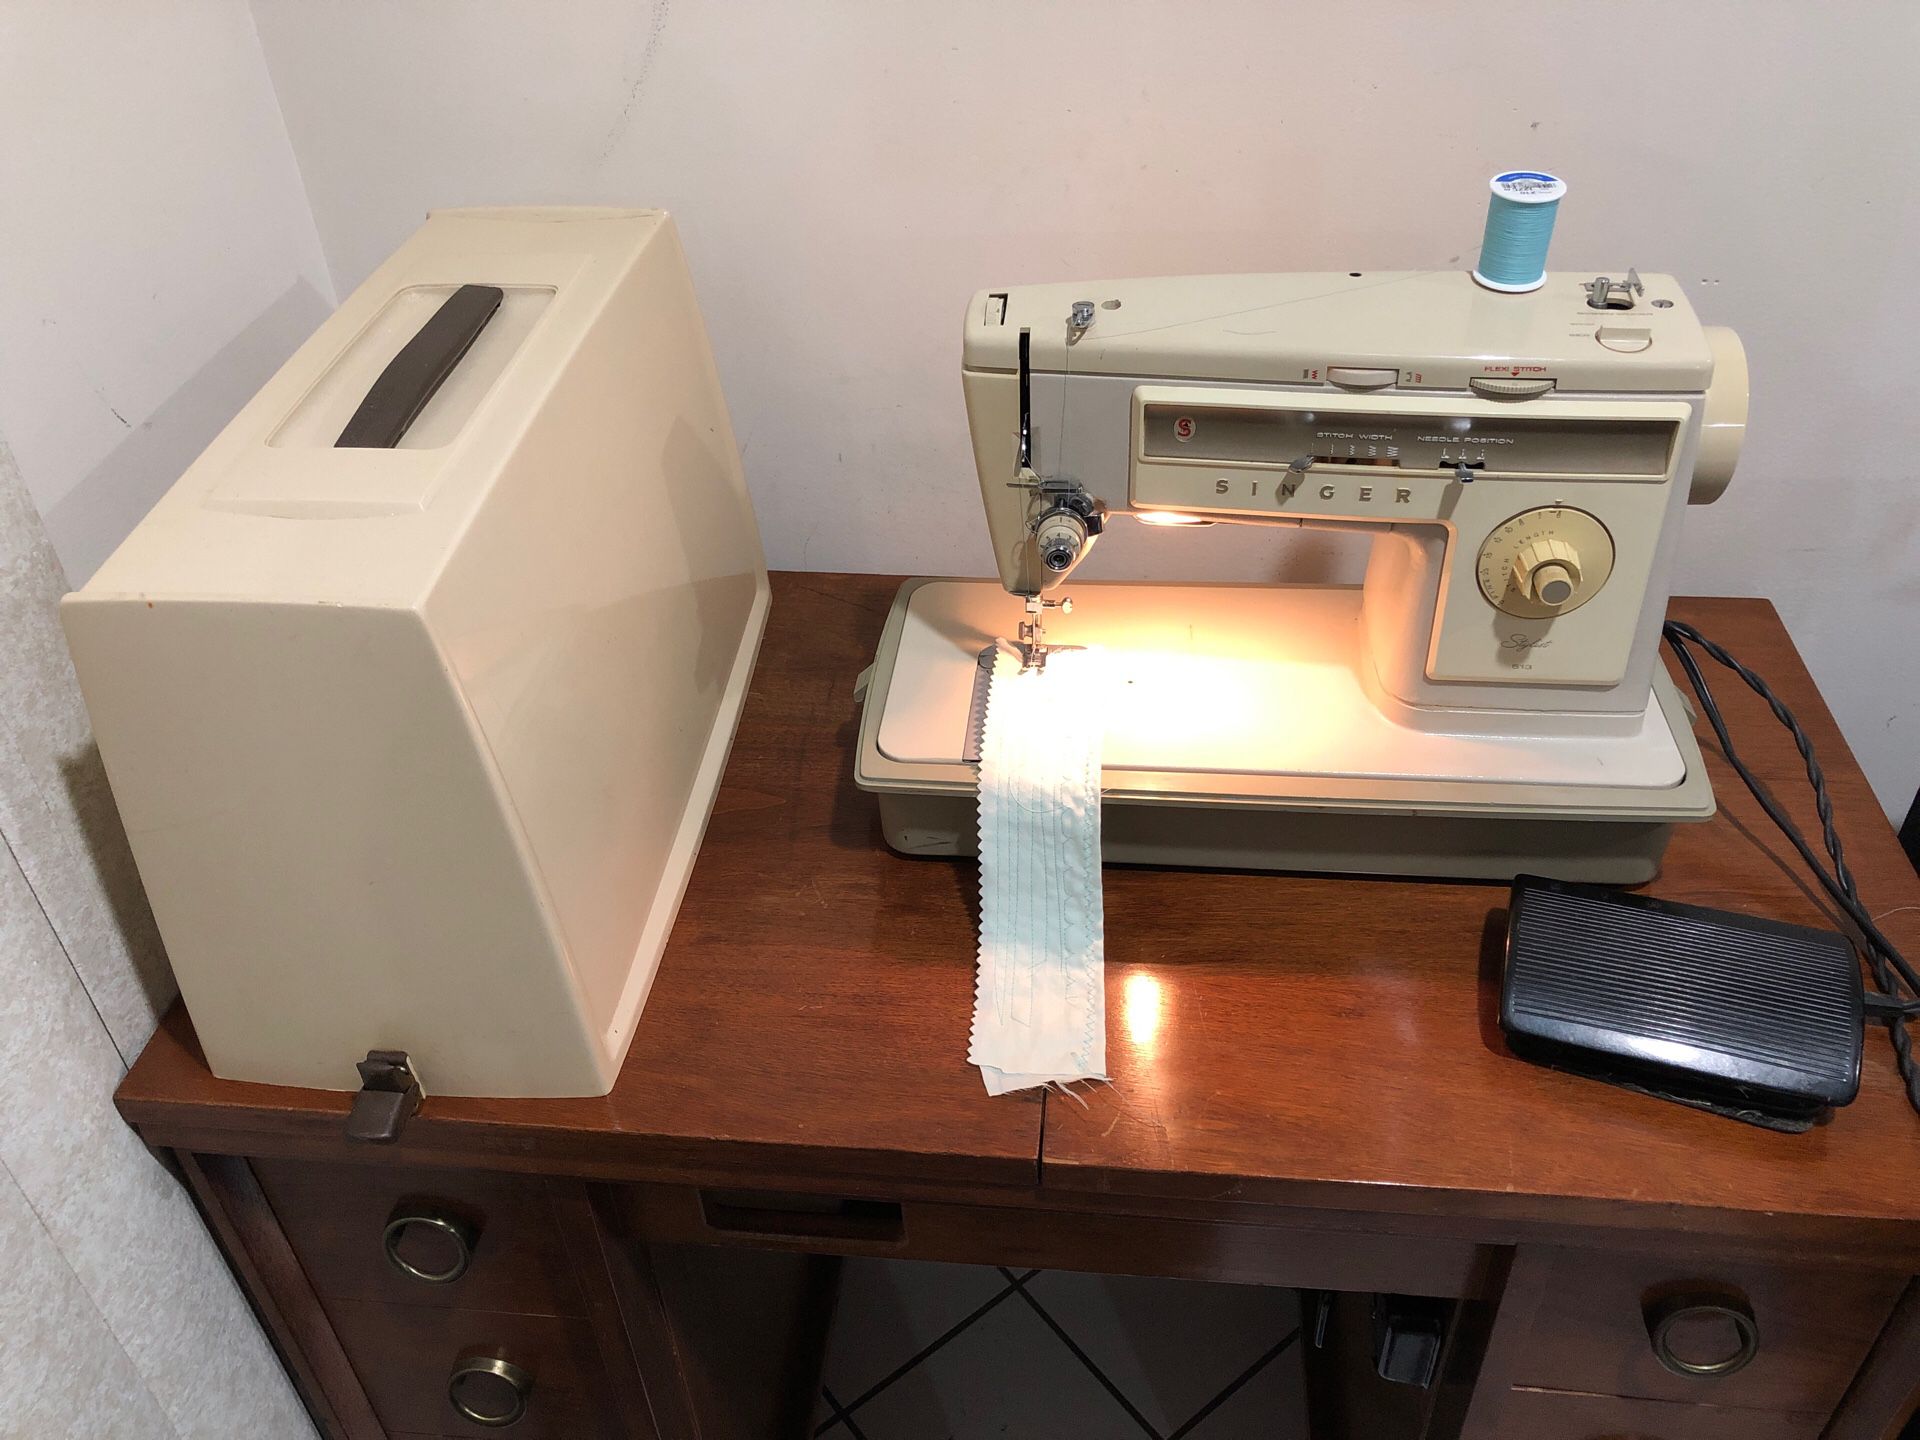 sewing machine singer model 513 stylist works excellent. Máquina de coser singer trabaja excelente .